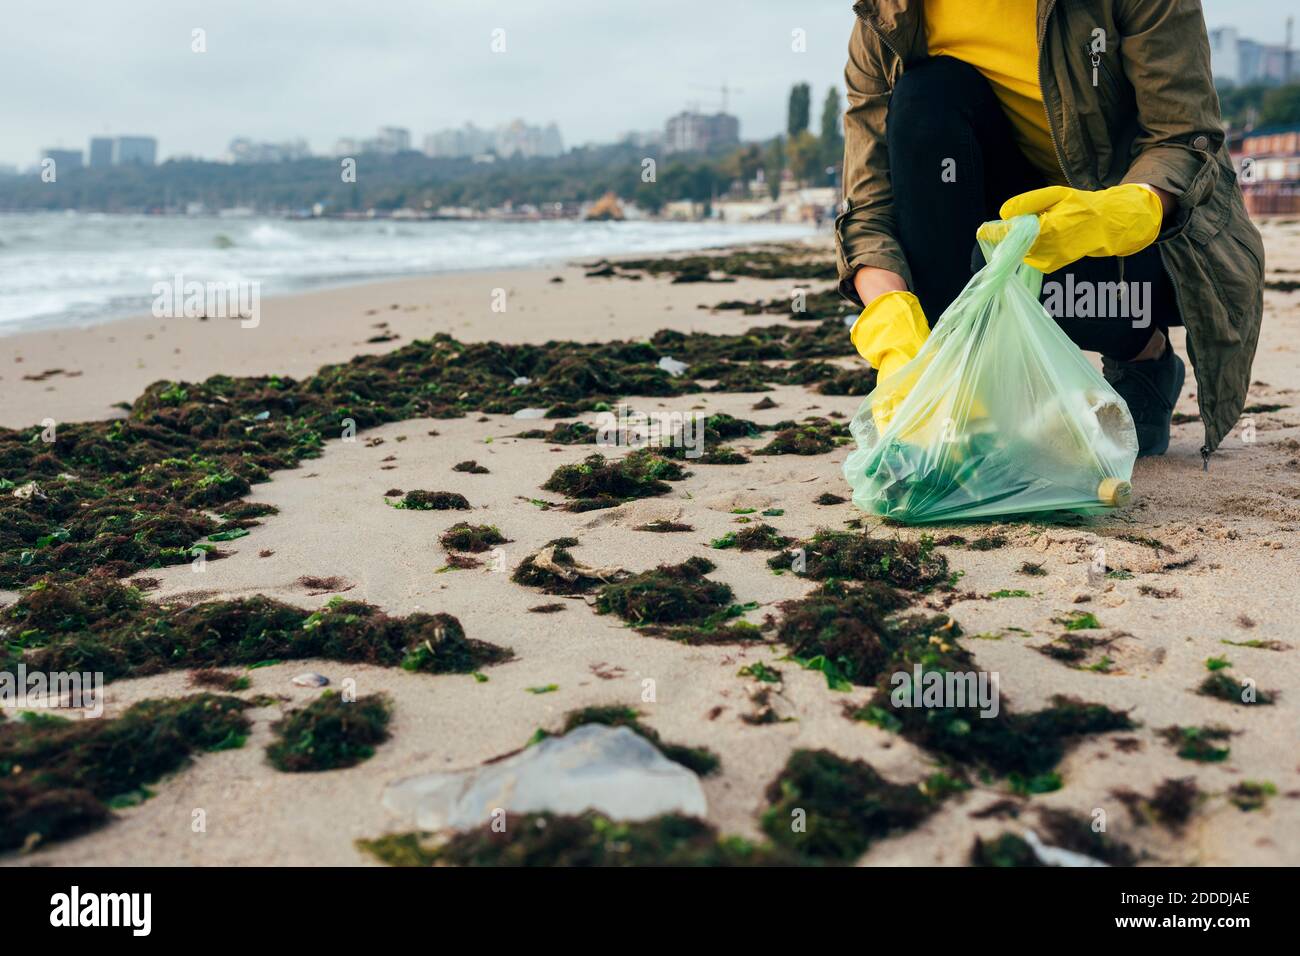 Écologiste collectant les ordures dans un sac à ordures tout en se brouillant à la plage Banque D'Images